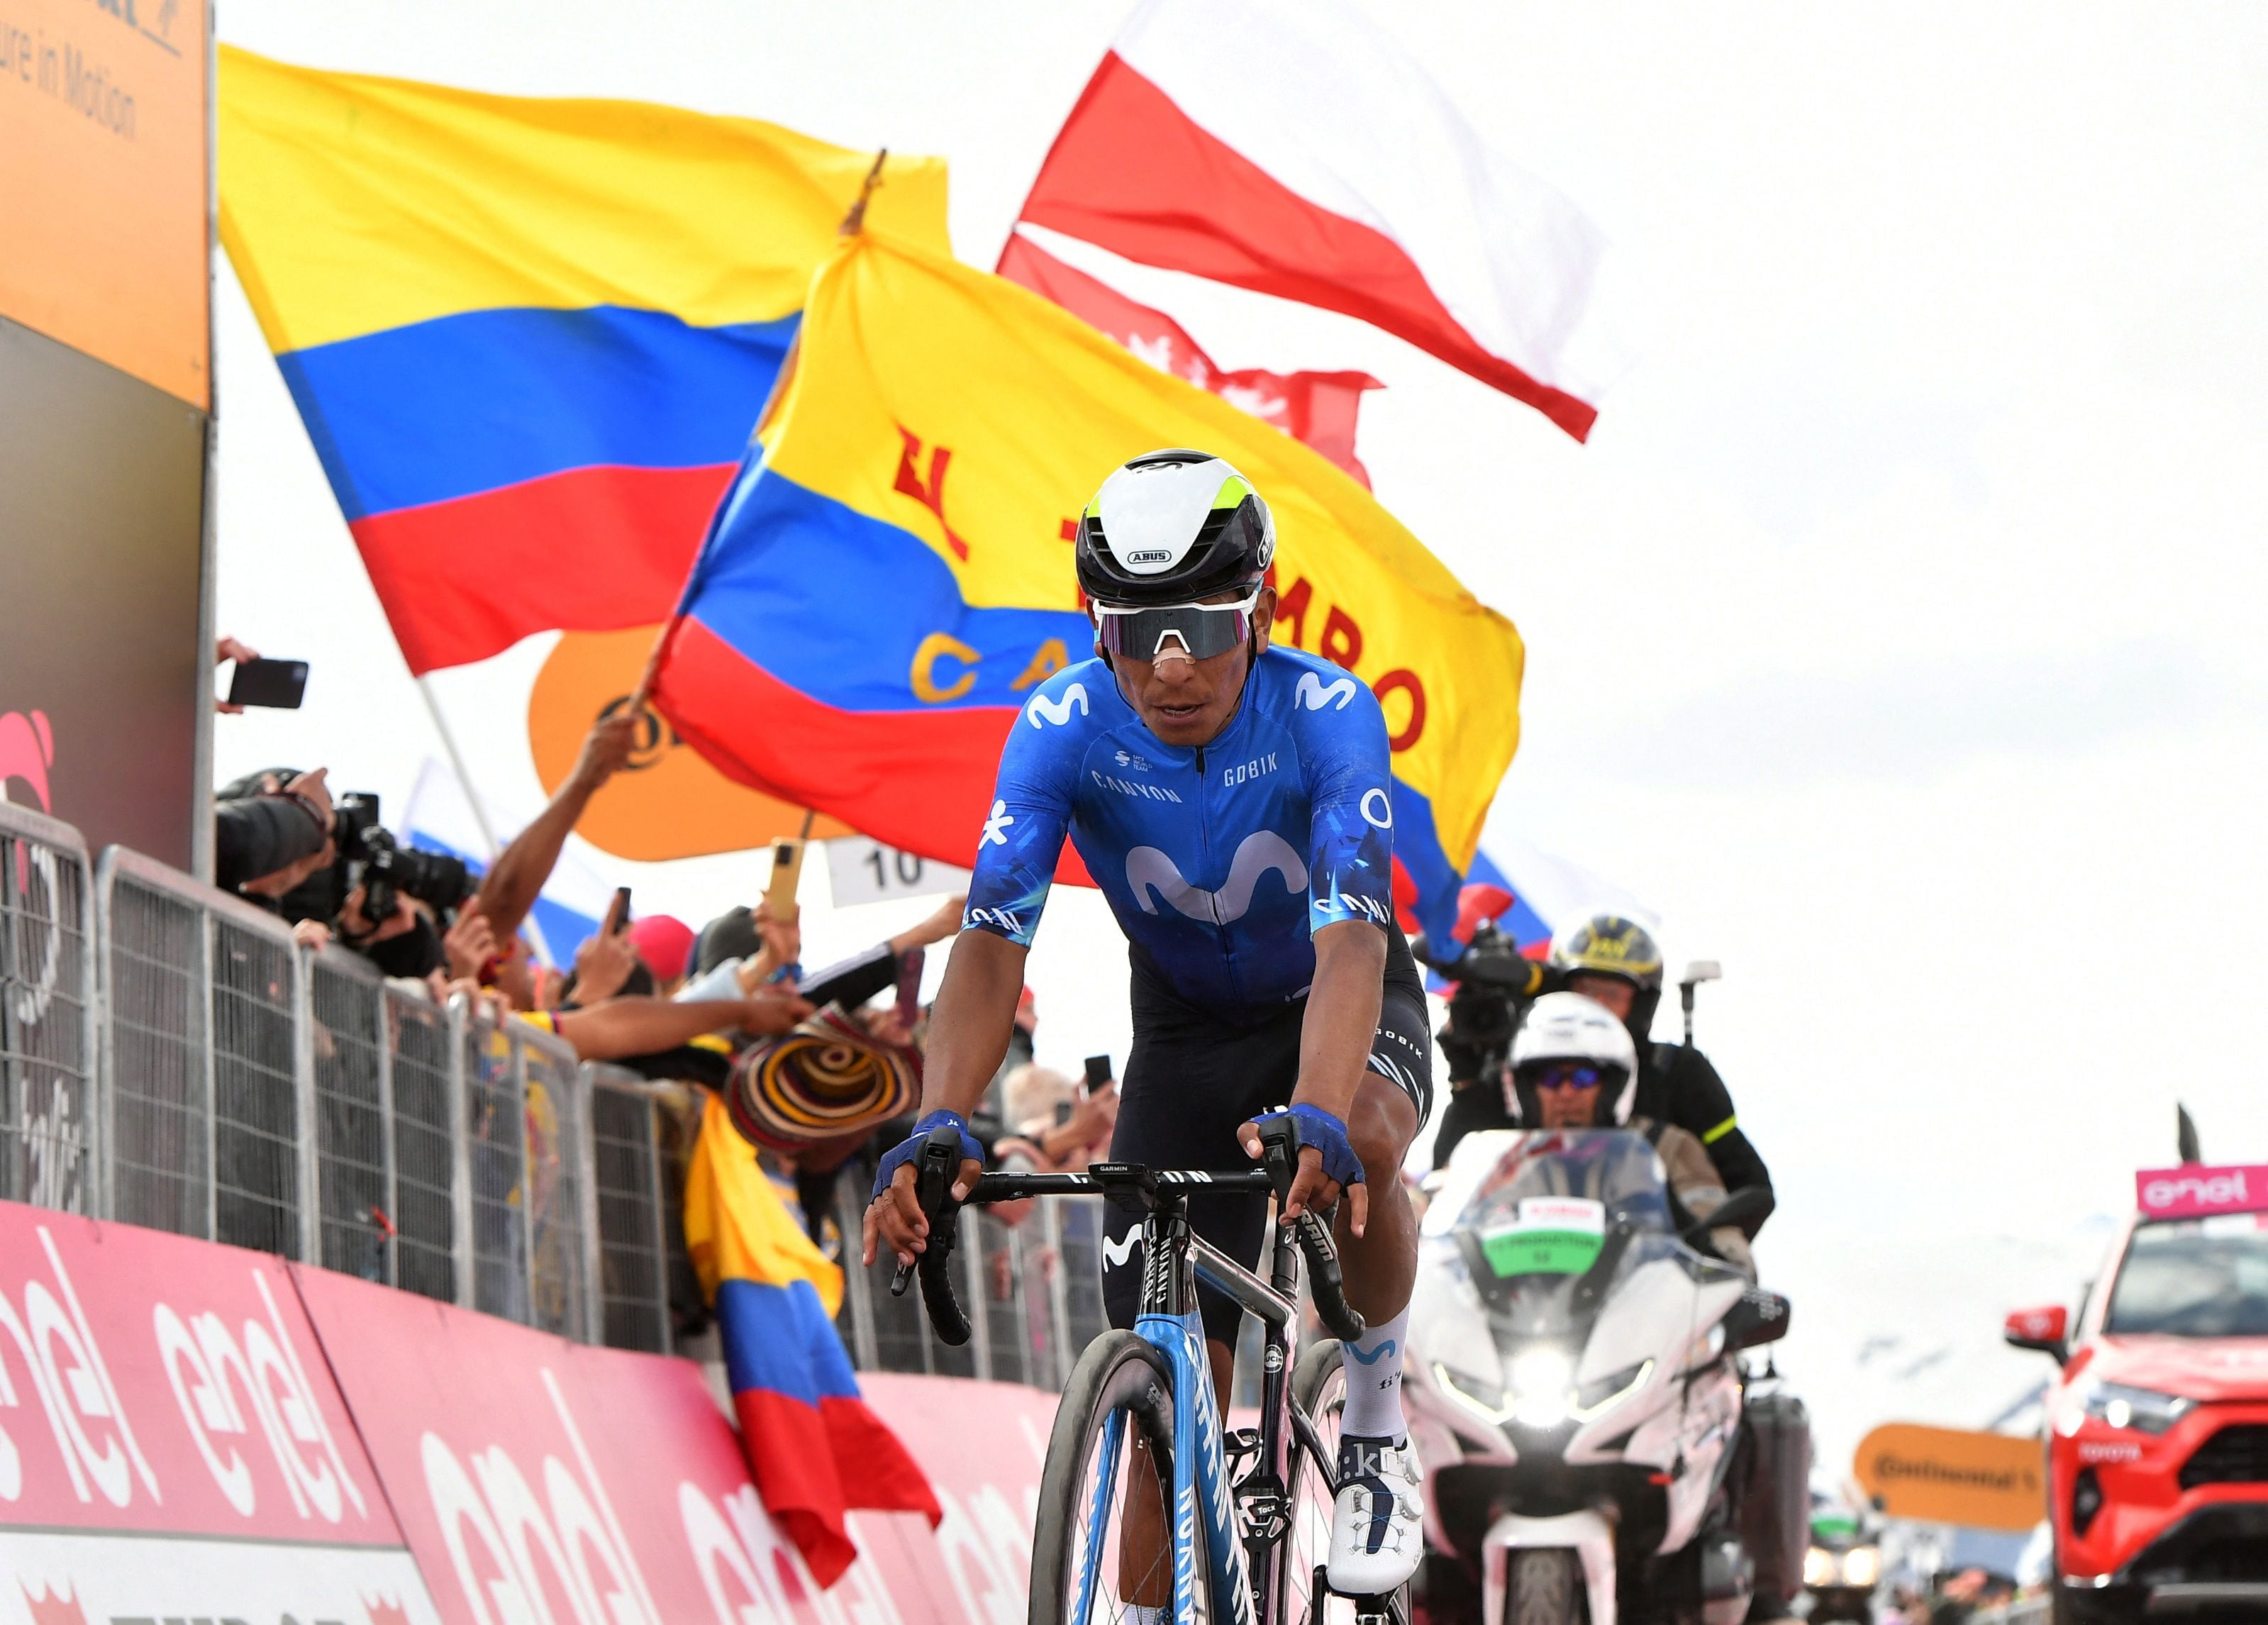 El colombiano fue el más combativo de la Etapa 15 del Giro de Italia al líder por varios kilómetros la carrera - crédito REUTERS/Jennifer Lorenzini